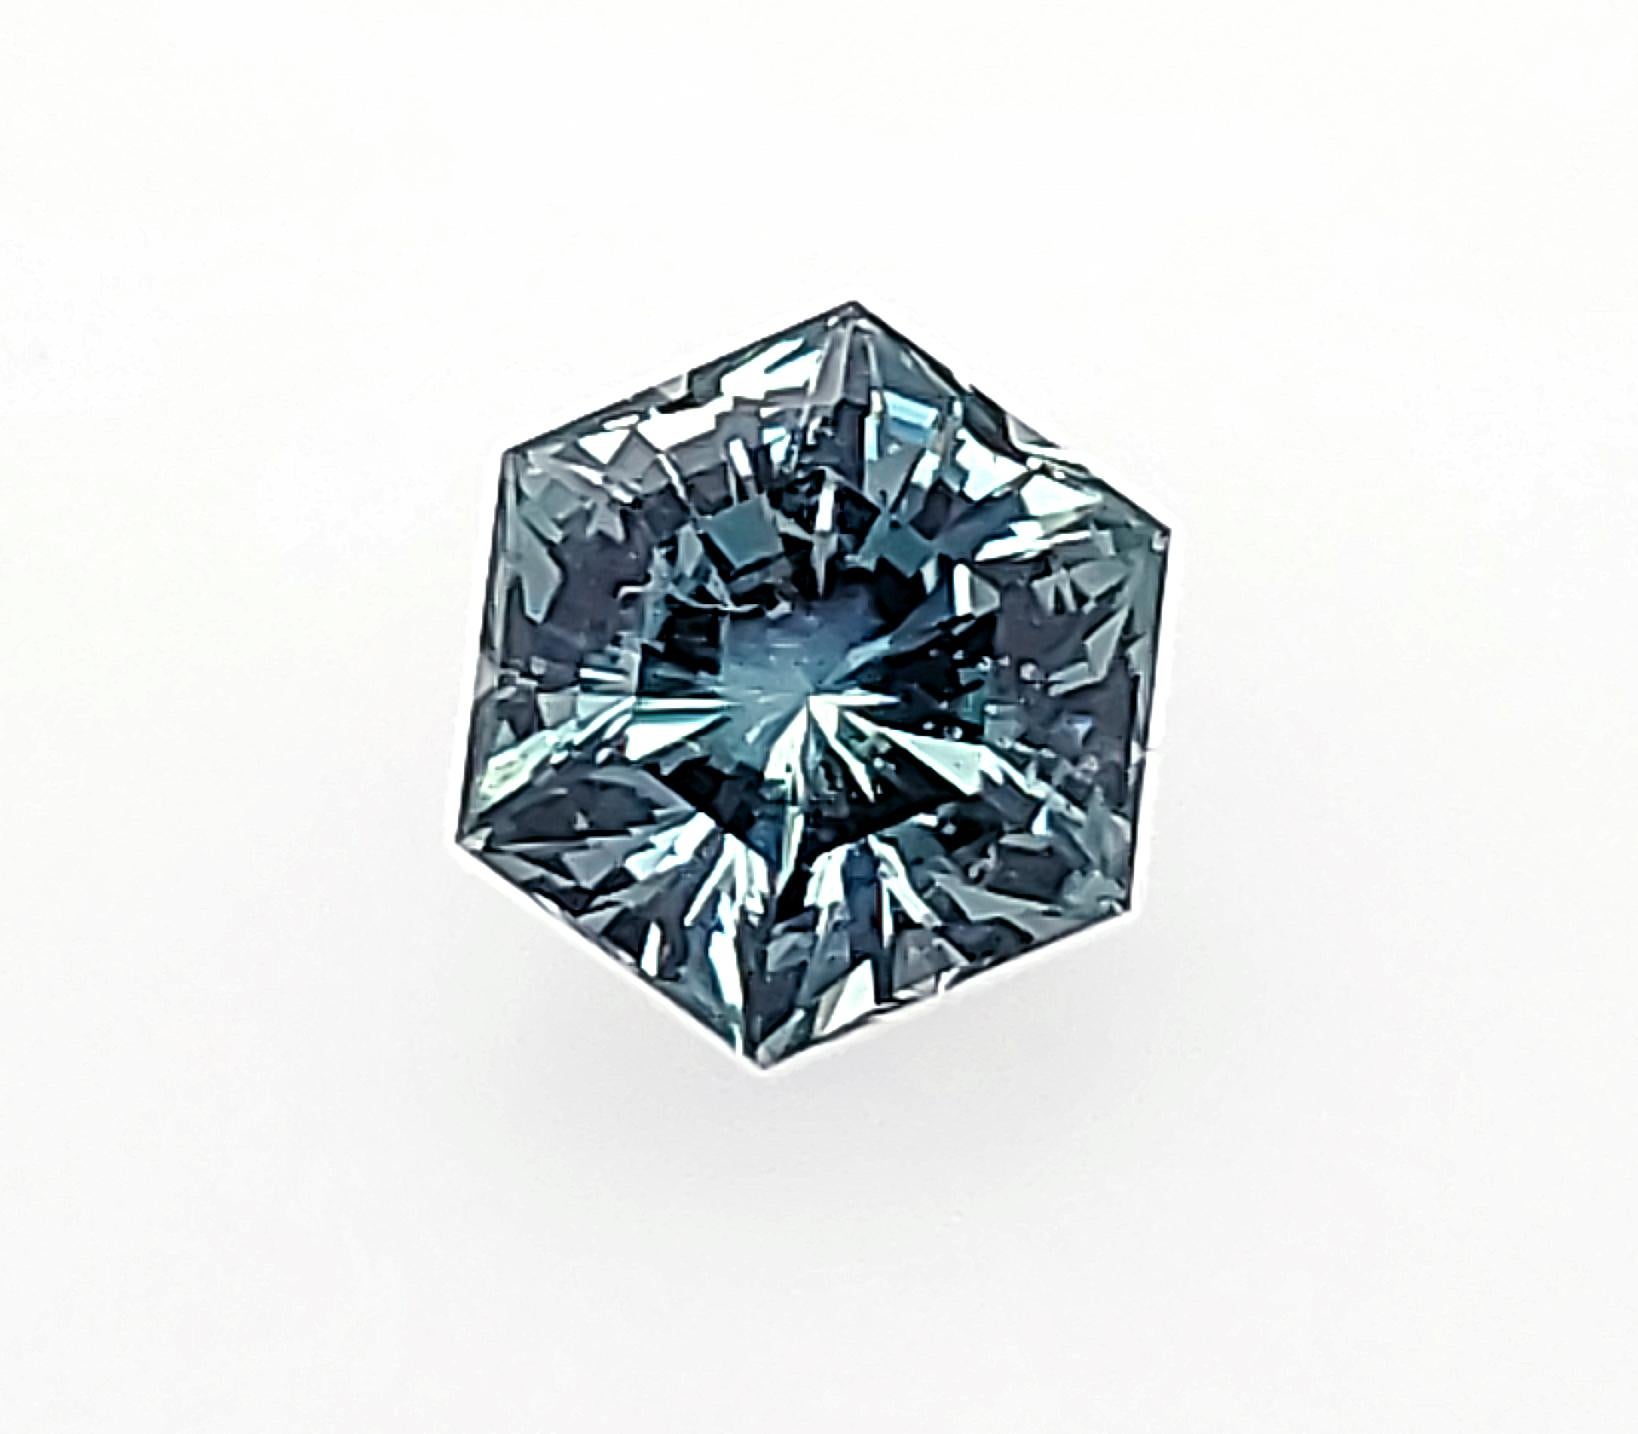 Wunderschöner 2,39ct Blauer Montana Saphir in einer sechseckigen Form, die häufig die Form der natürlichen Kristalle ist, die an diesem Ort gefunden werden  Meisterhaft facettiert von einem mit dem AGTA-Preis ausgezeichneten Schleifer, dessen Arbeit